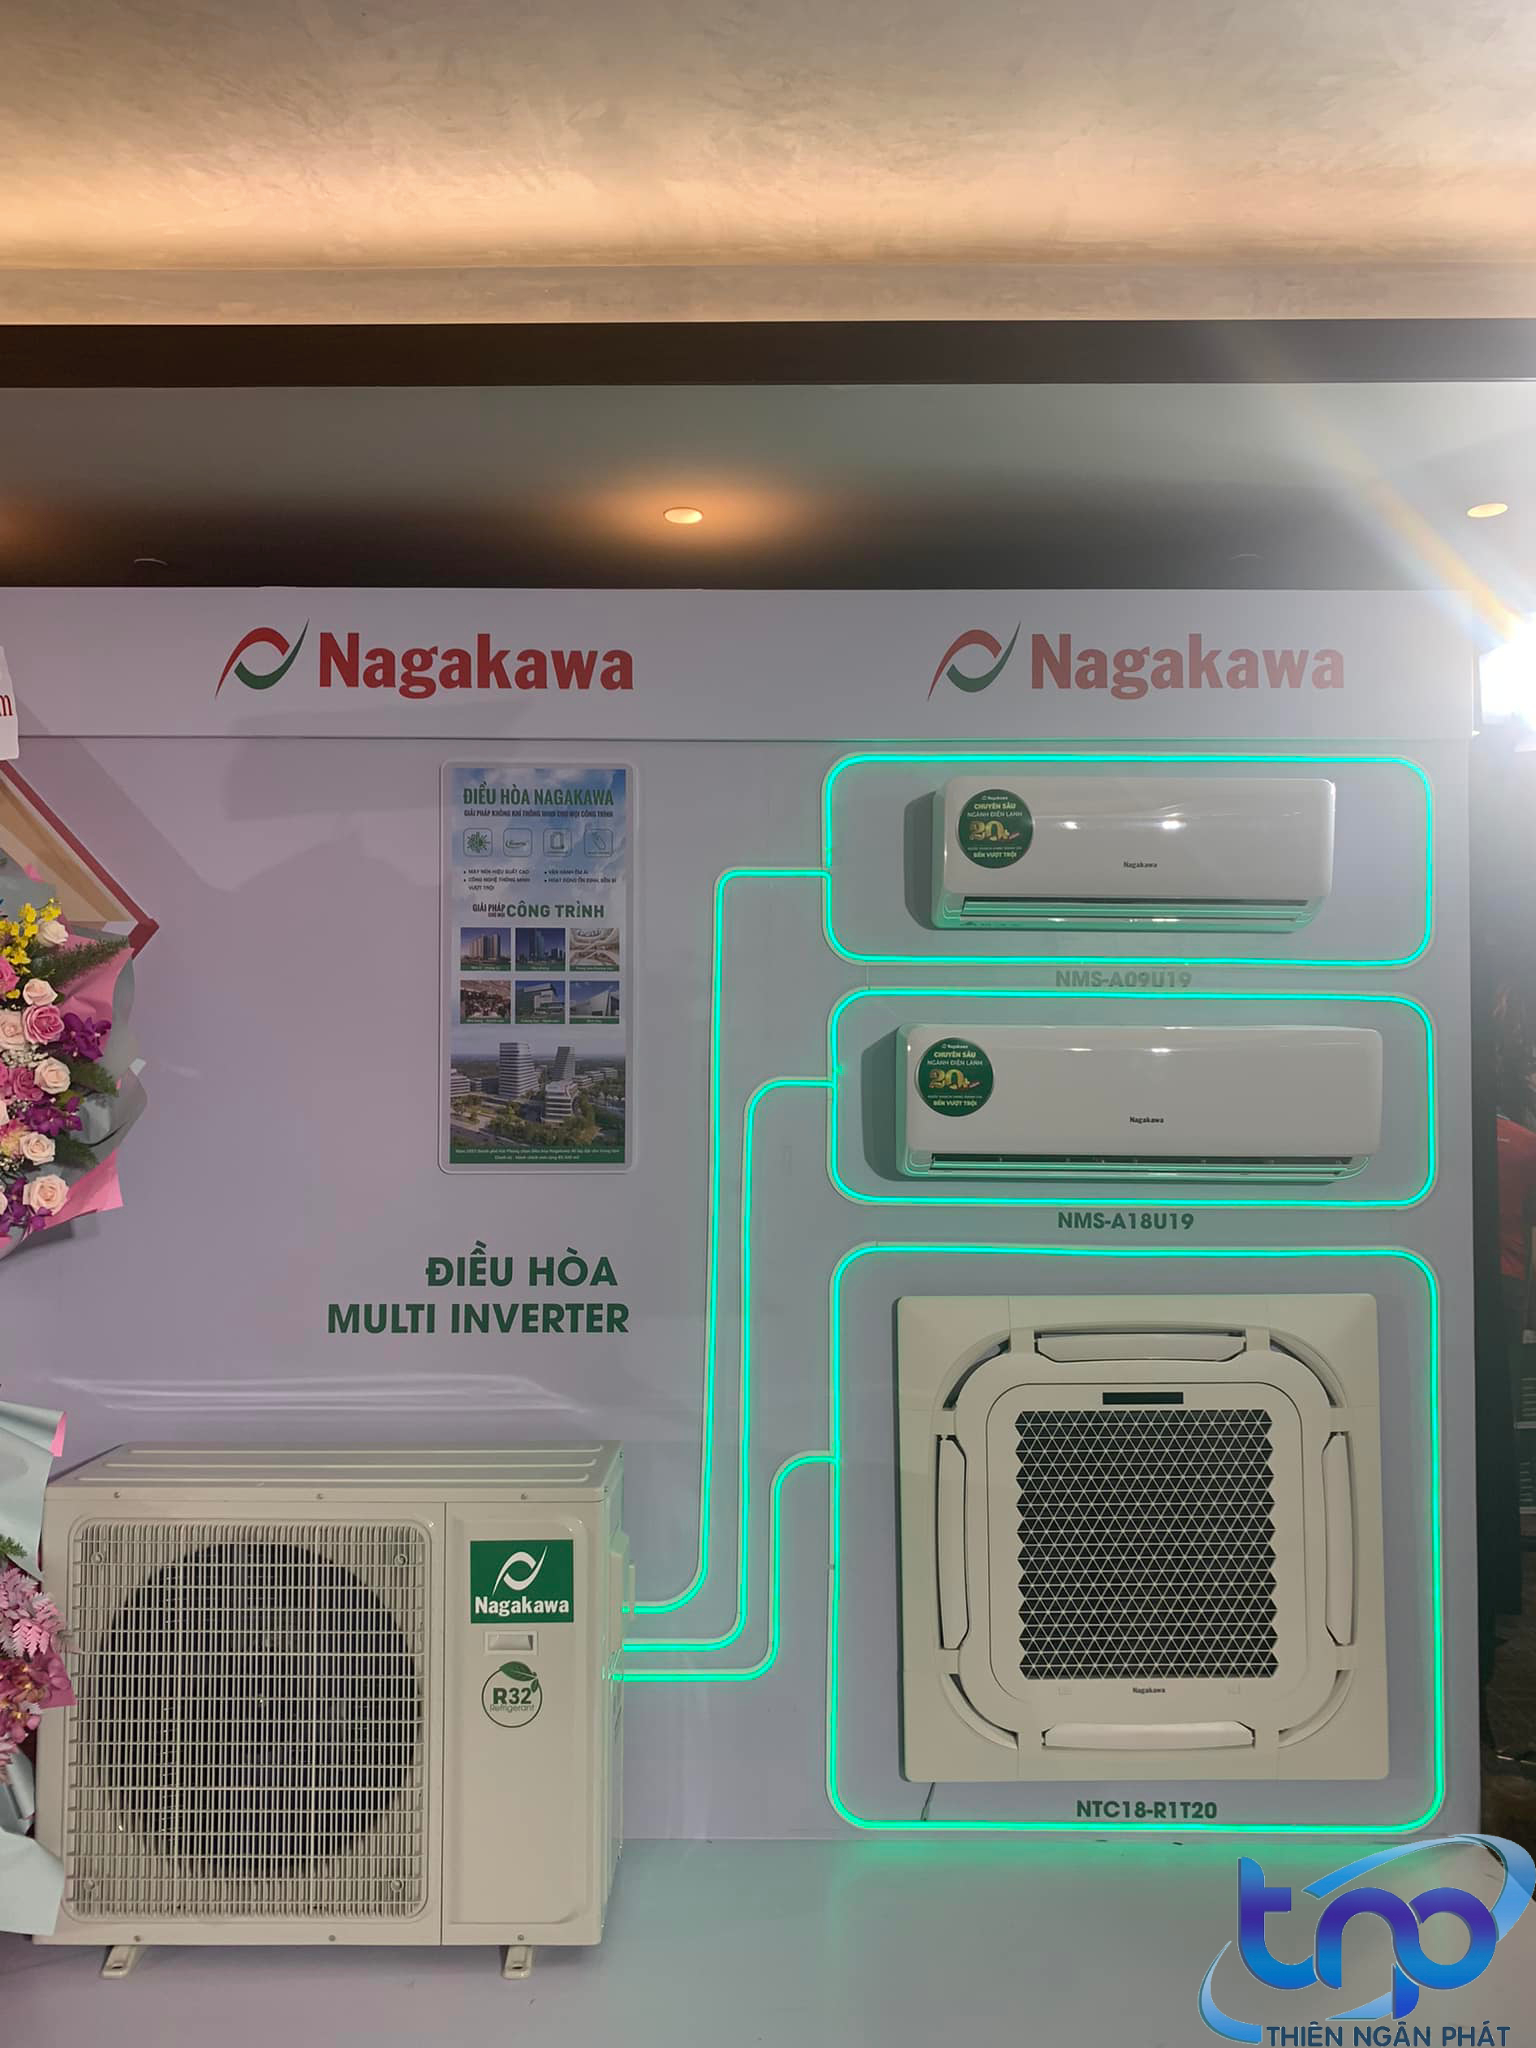 Giá RẺ máy lạnh Nagakawa tại Điện lạnh Thiên Ngân Phát May-lanh-am-tran-cassette-Nagakawa